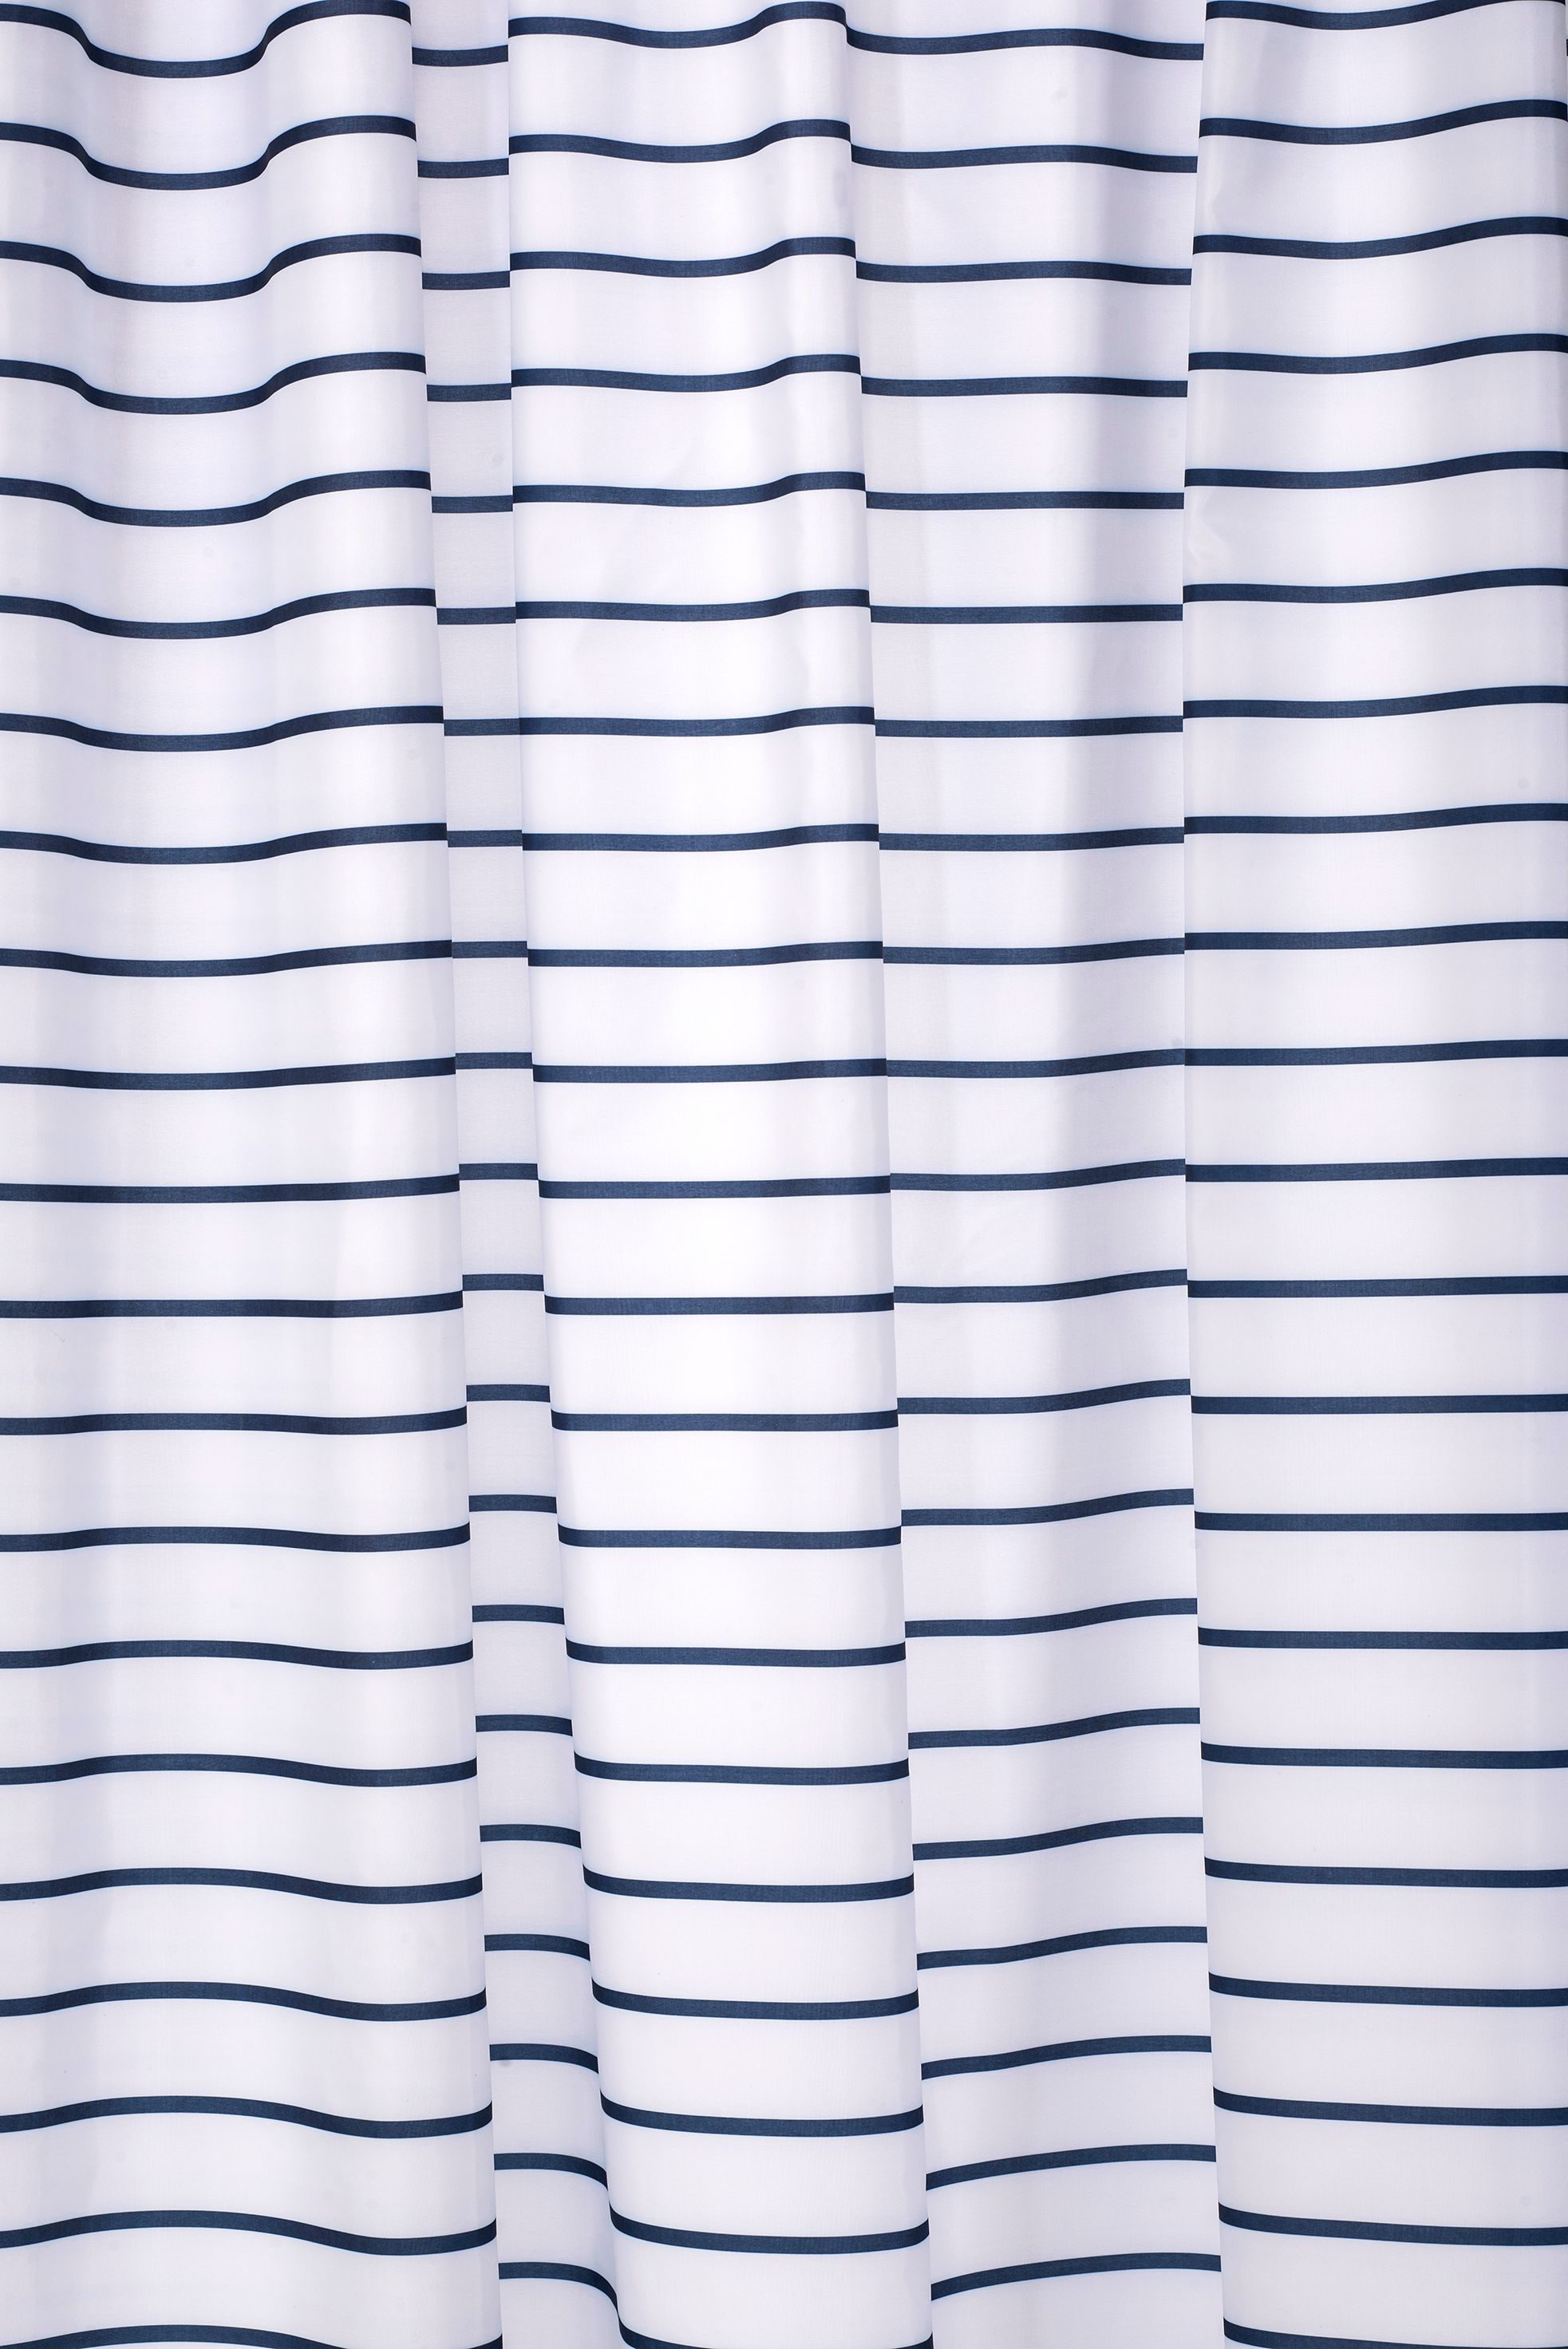 Croydex Textile Shower Curtain - White/Navy Stripe